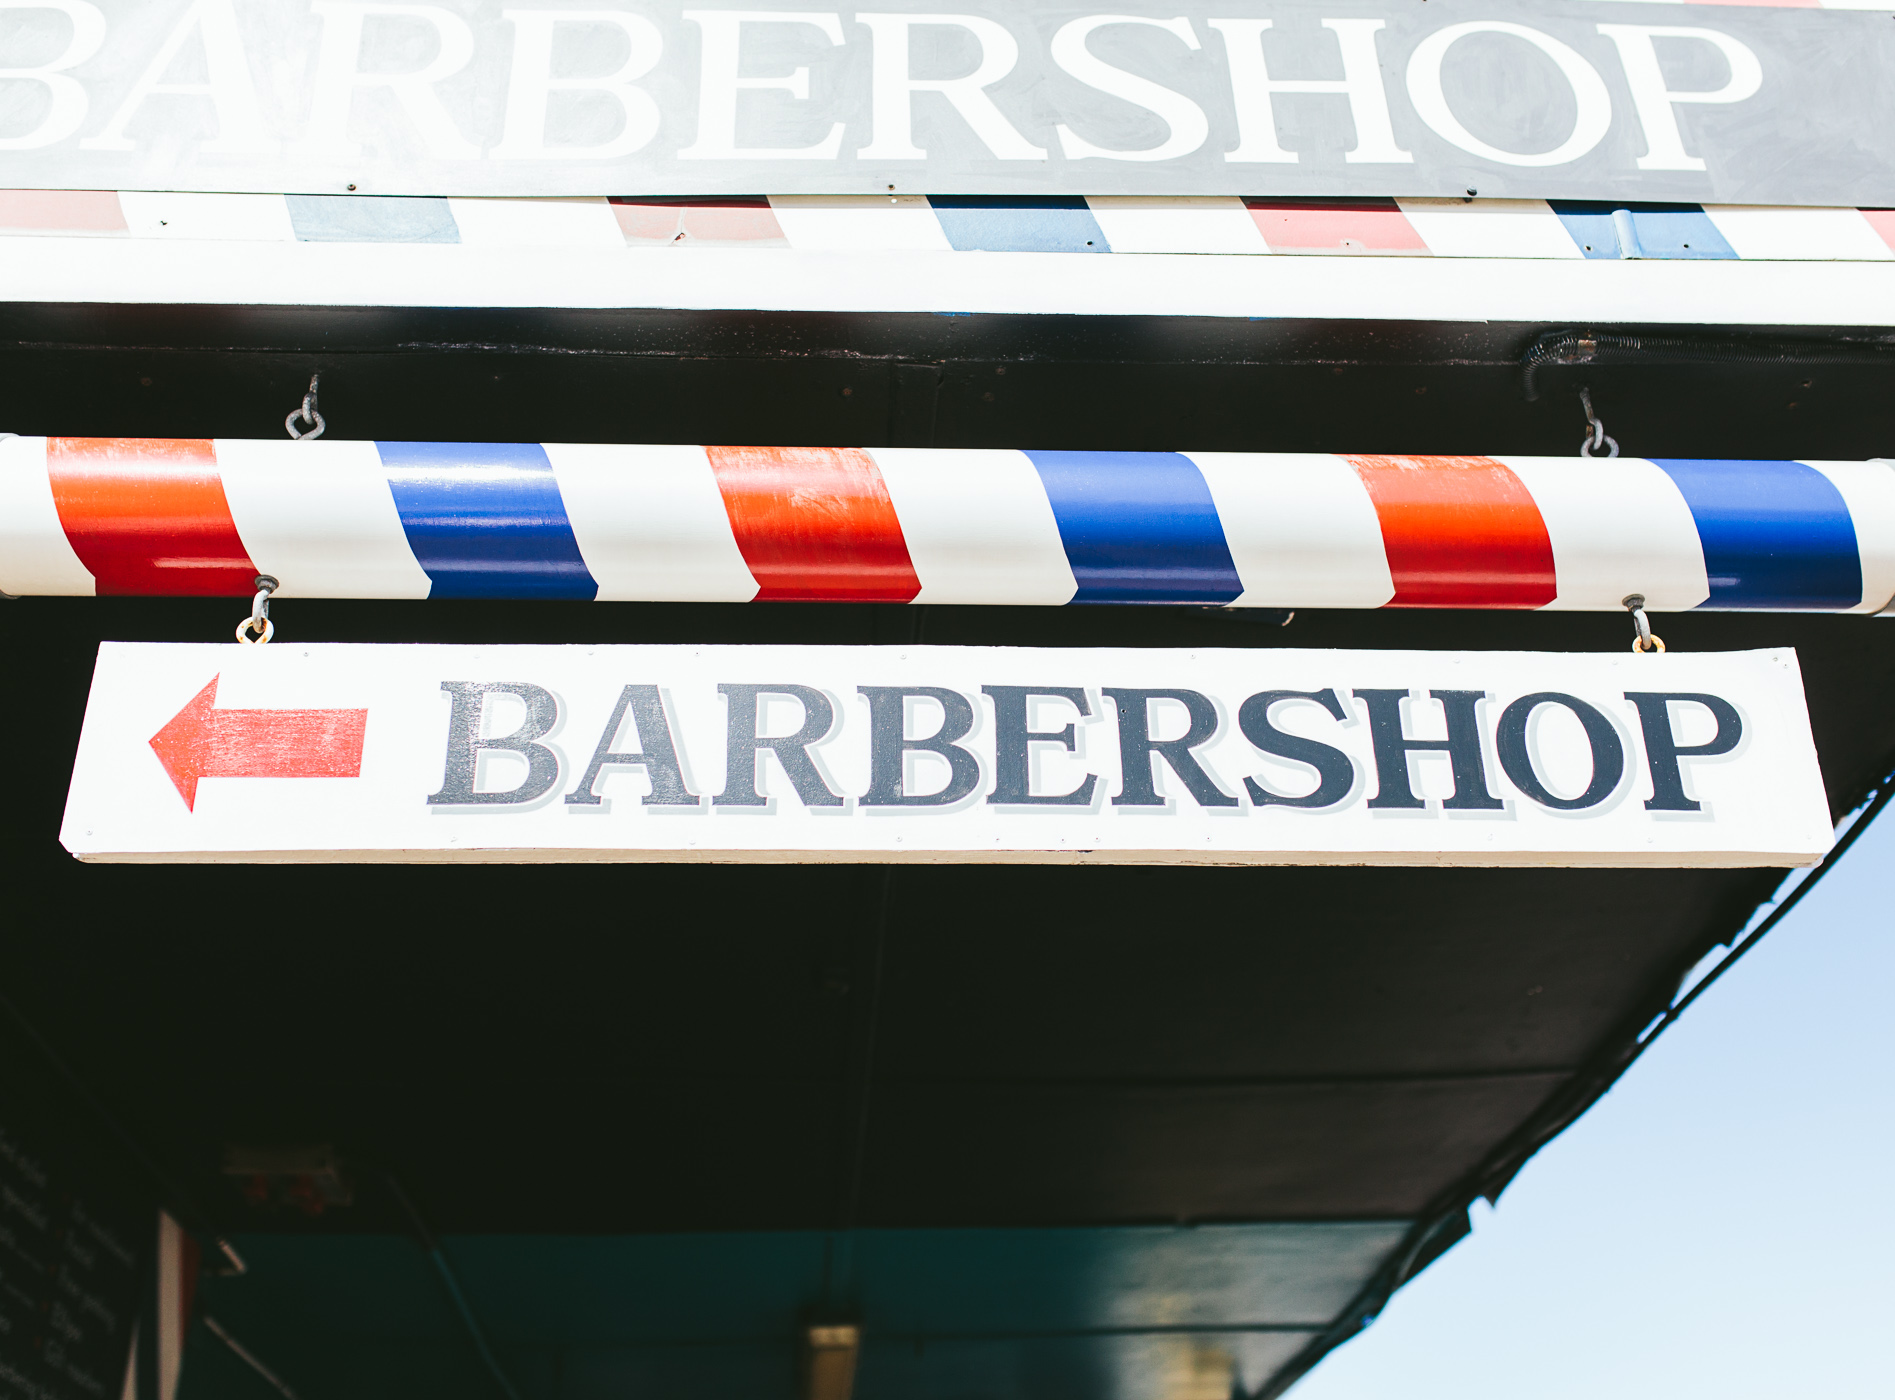 kennedeys barber shop sign